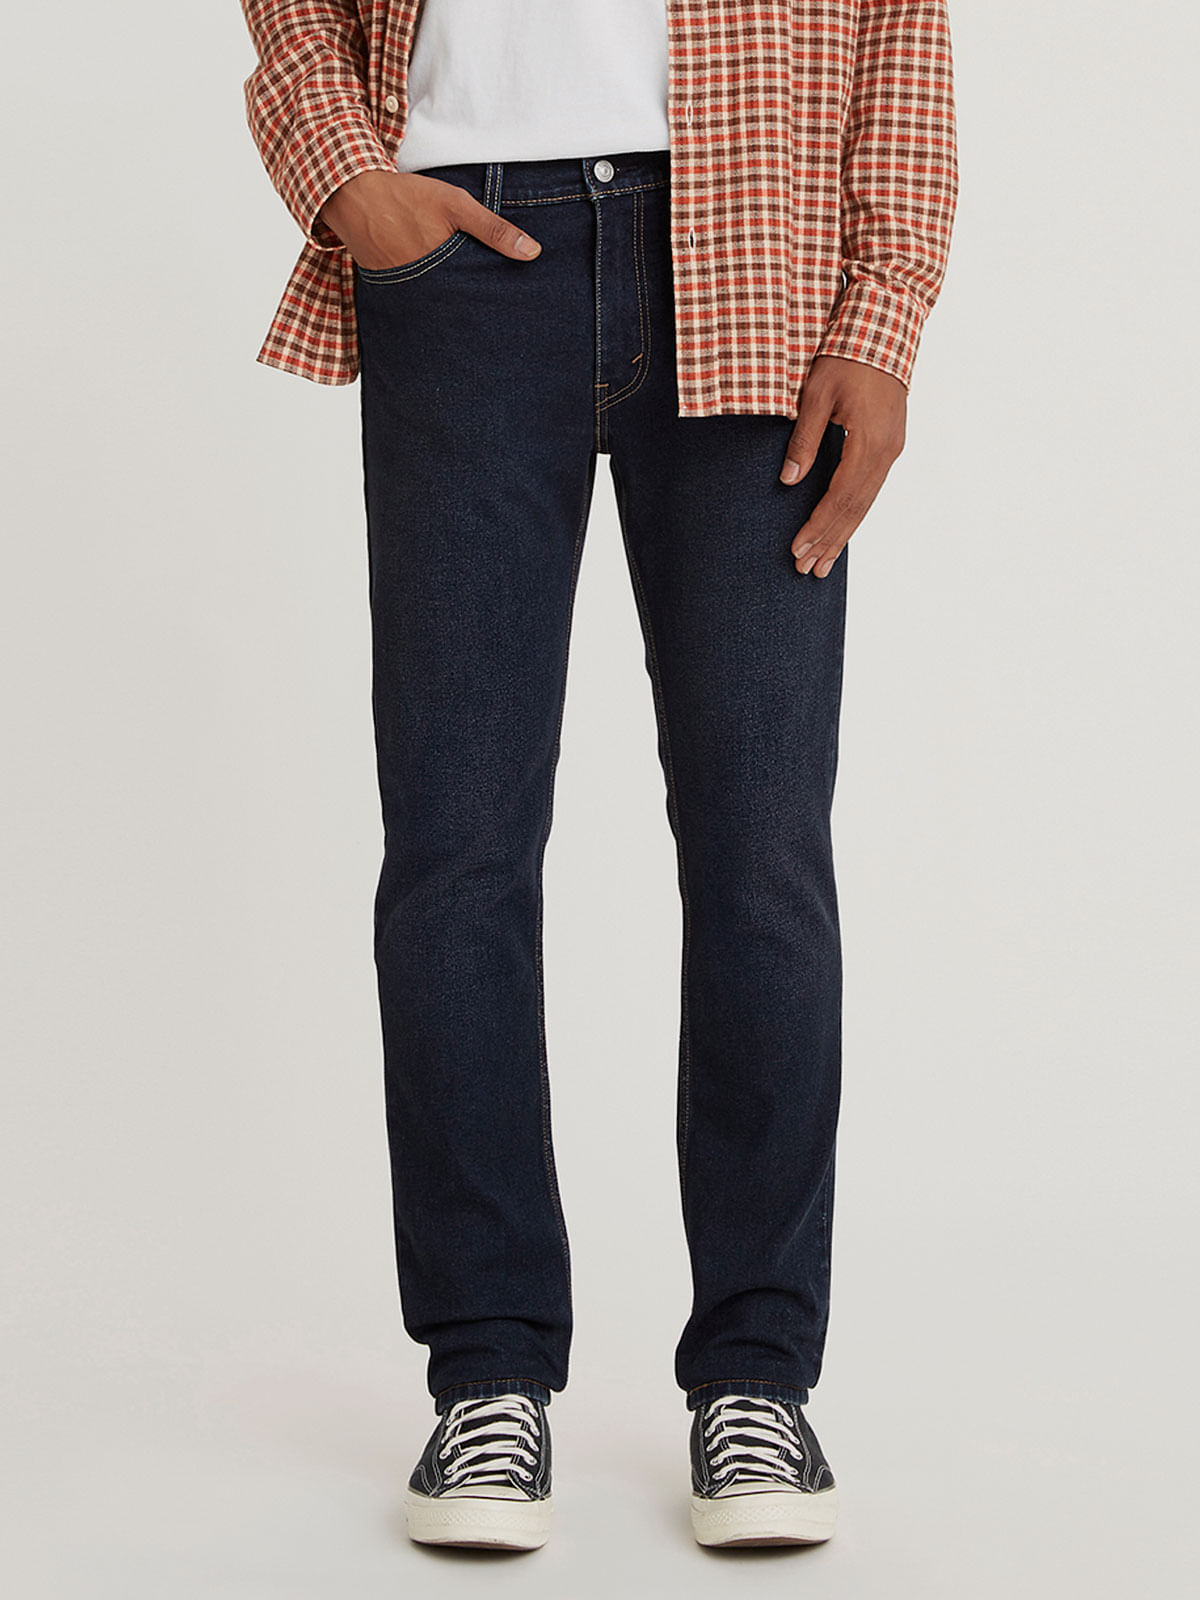 Jeans y Pantalones,00501-0115 - Tienda Oficial de Levi's Online en Panama